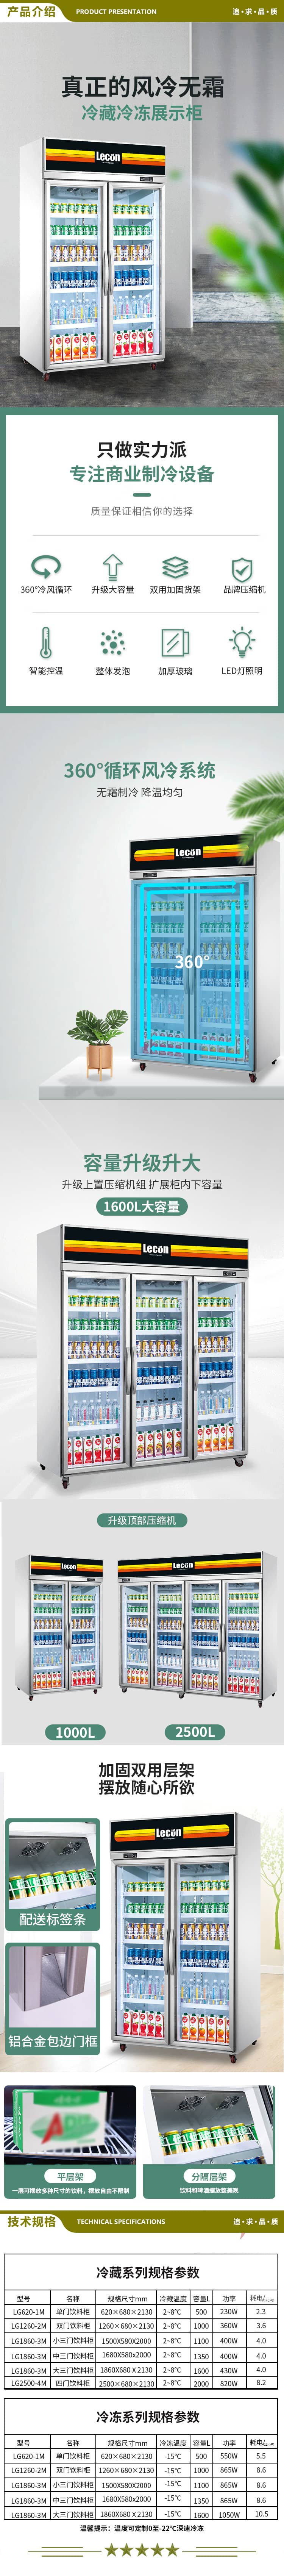 乐创(lecon) L-1260FL-1 超市冰柜商用展示柜冷藏风冷饮料柜士多店便利店冰箱水果冷藏柜保鲜柜啤酒柜  2.jpg